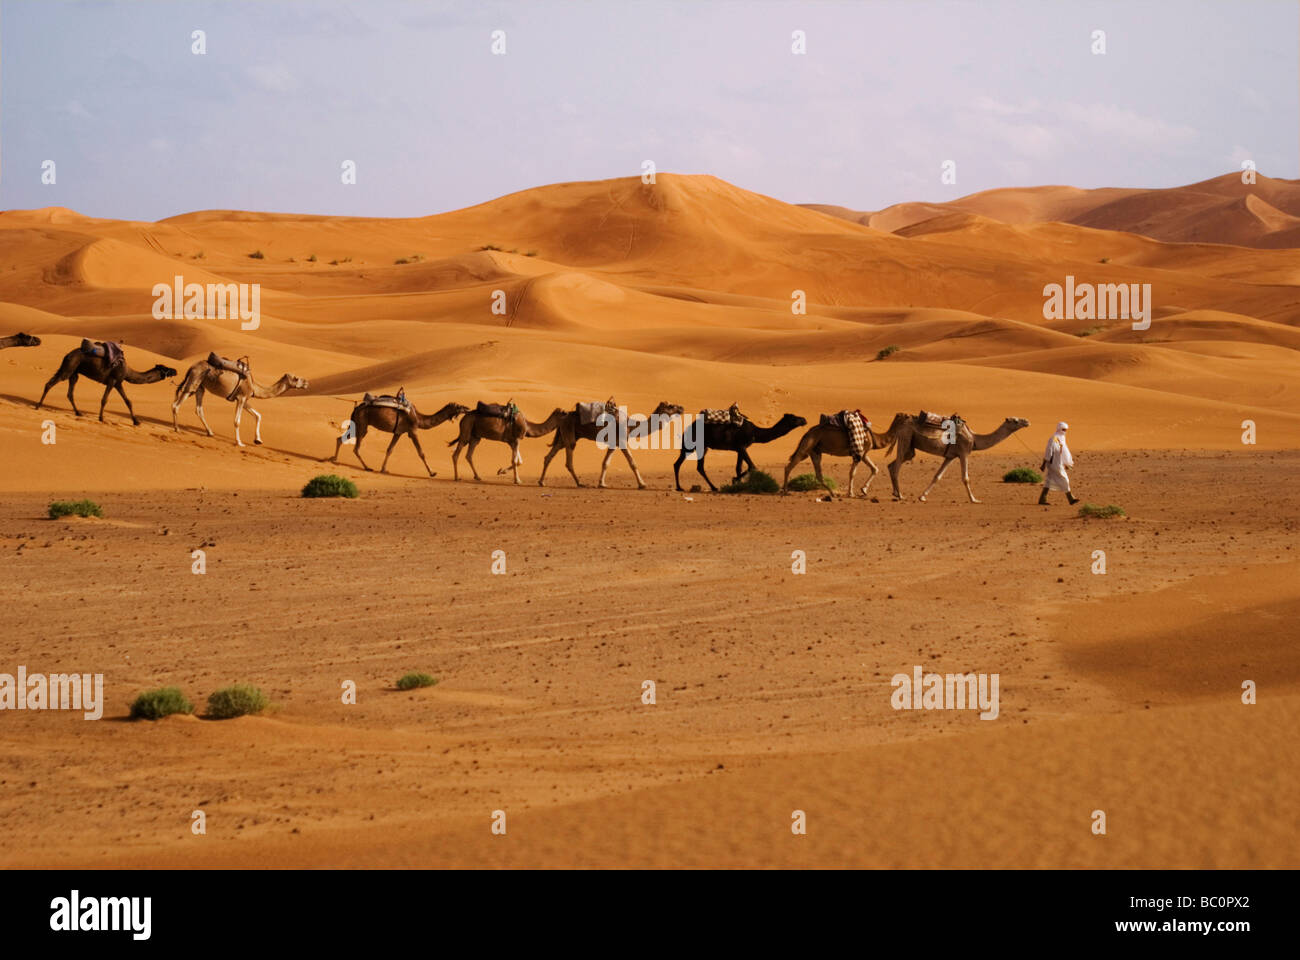 Ein Berber-Mann in traditioneller Kleidung führt einen Kamelen Zug durch die Sahara-Wüste in der Nähe von Merzouga Marokko Nordafrika Stockfoto